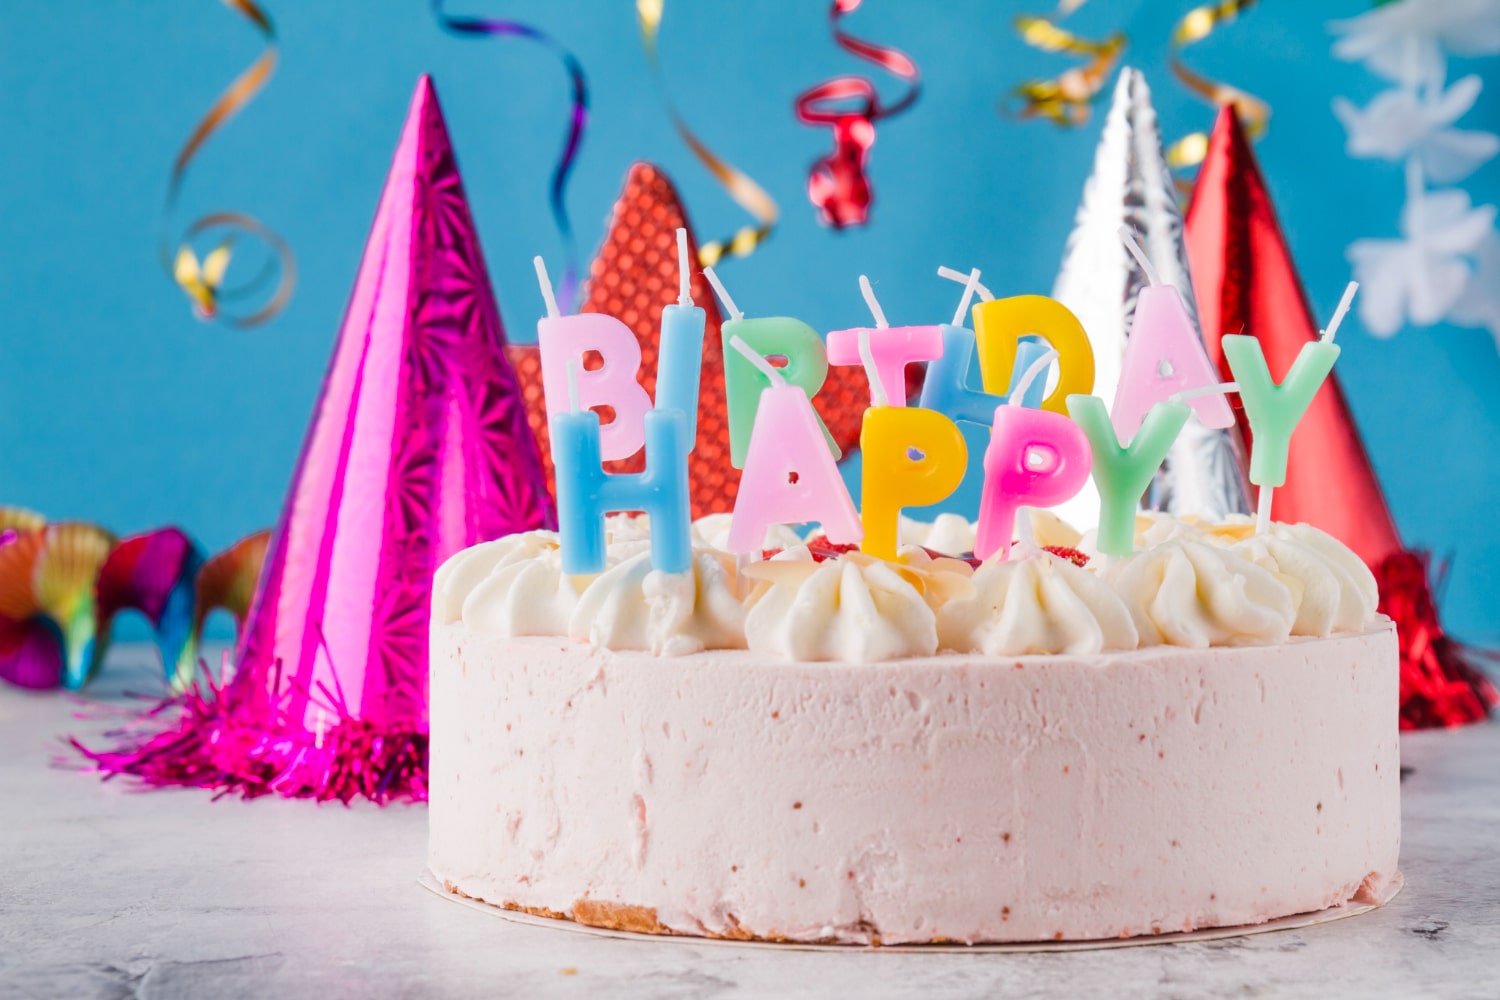 คำอวยพรวันเกิดตัวเอง - cake with candles birthday hats - ภาพที่ 3